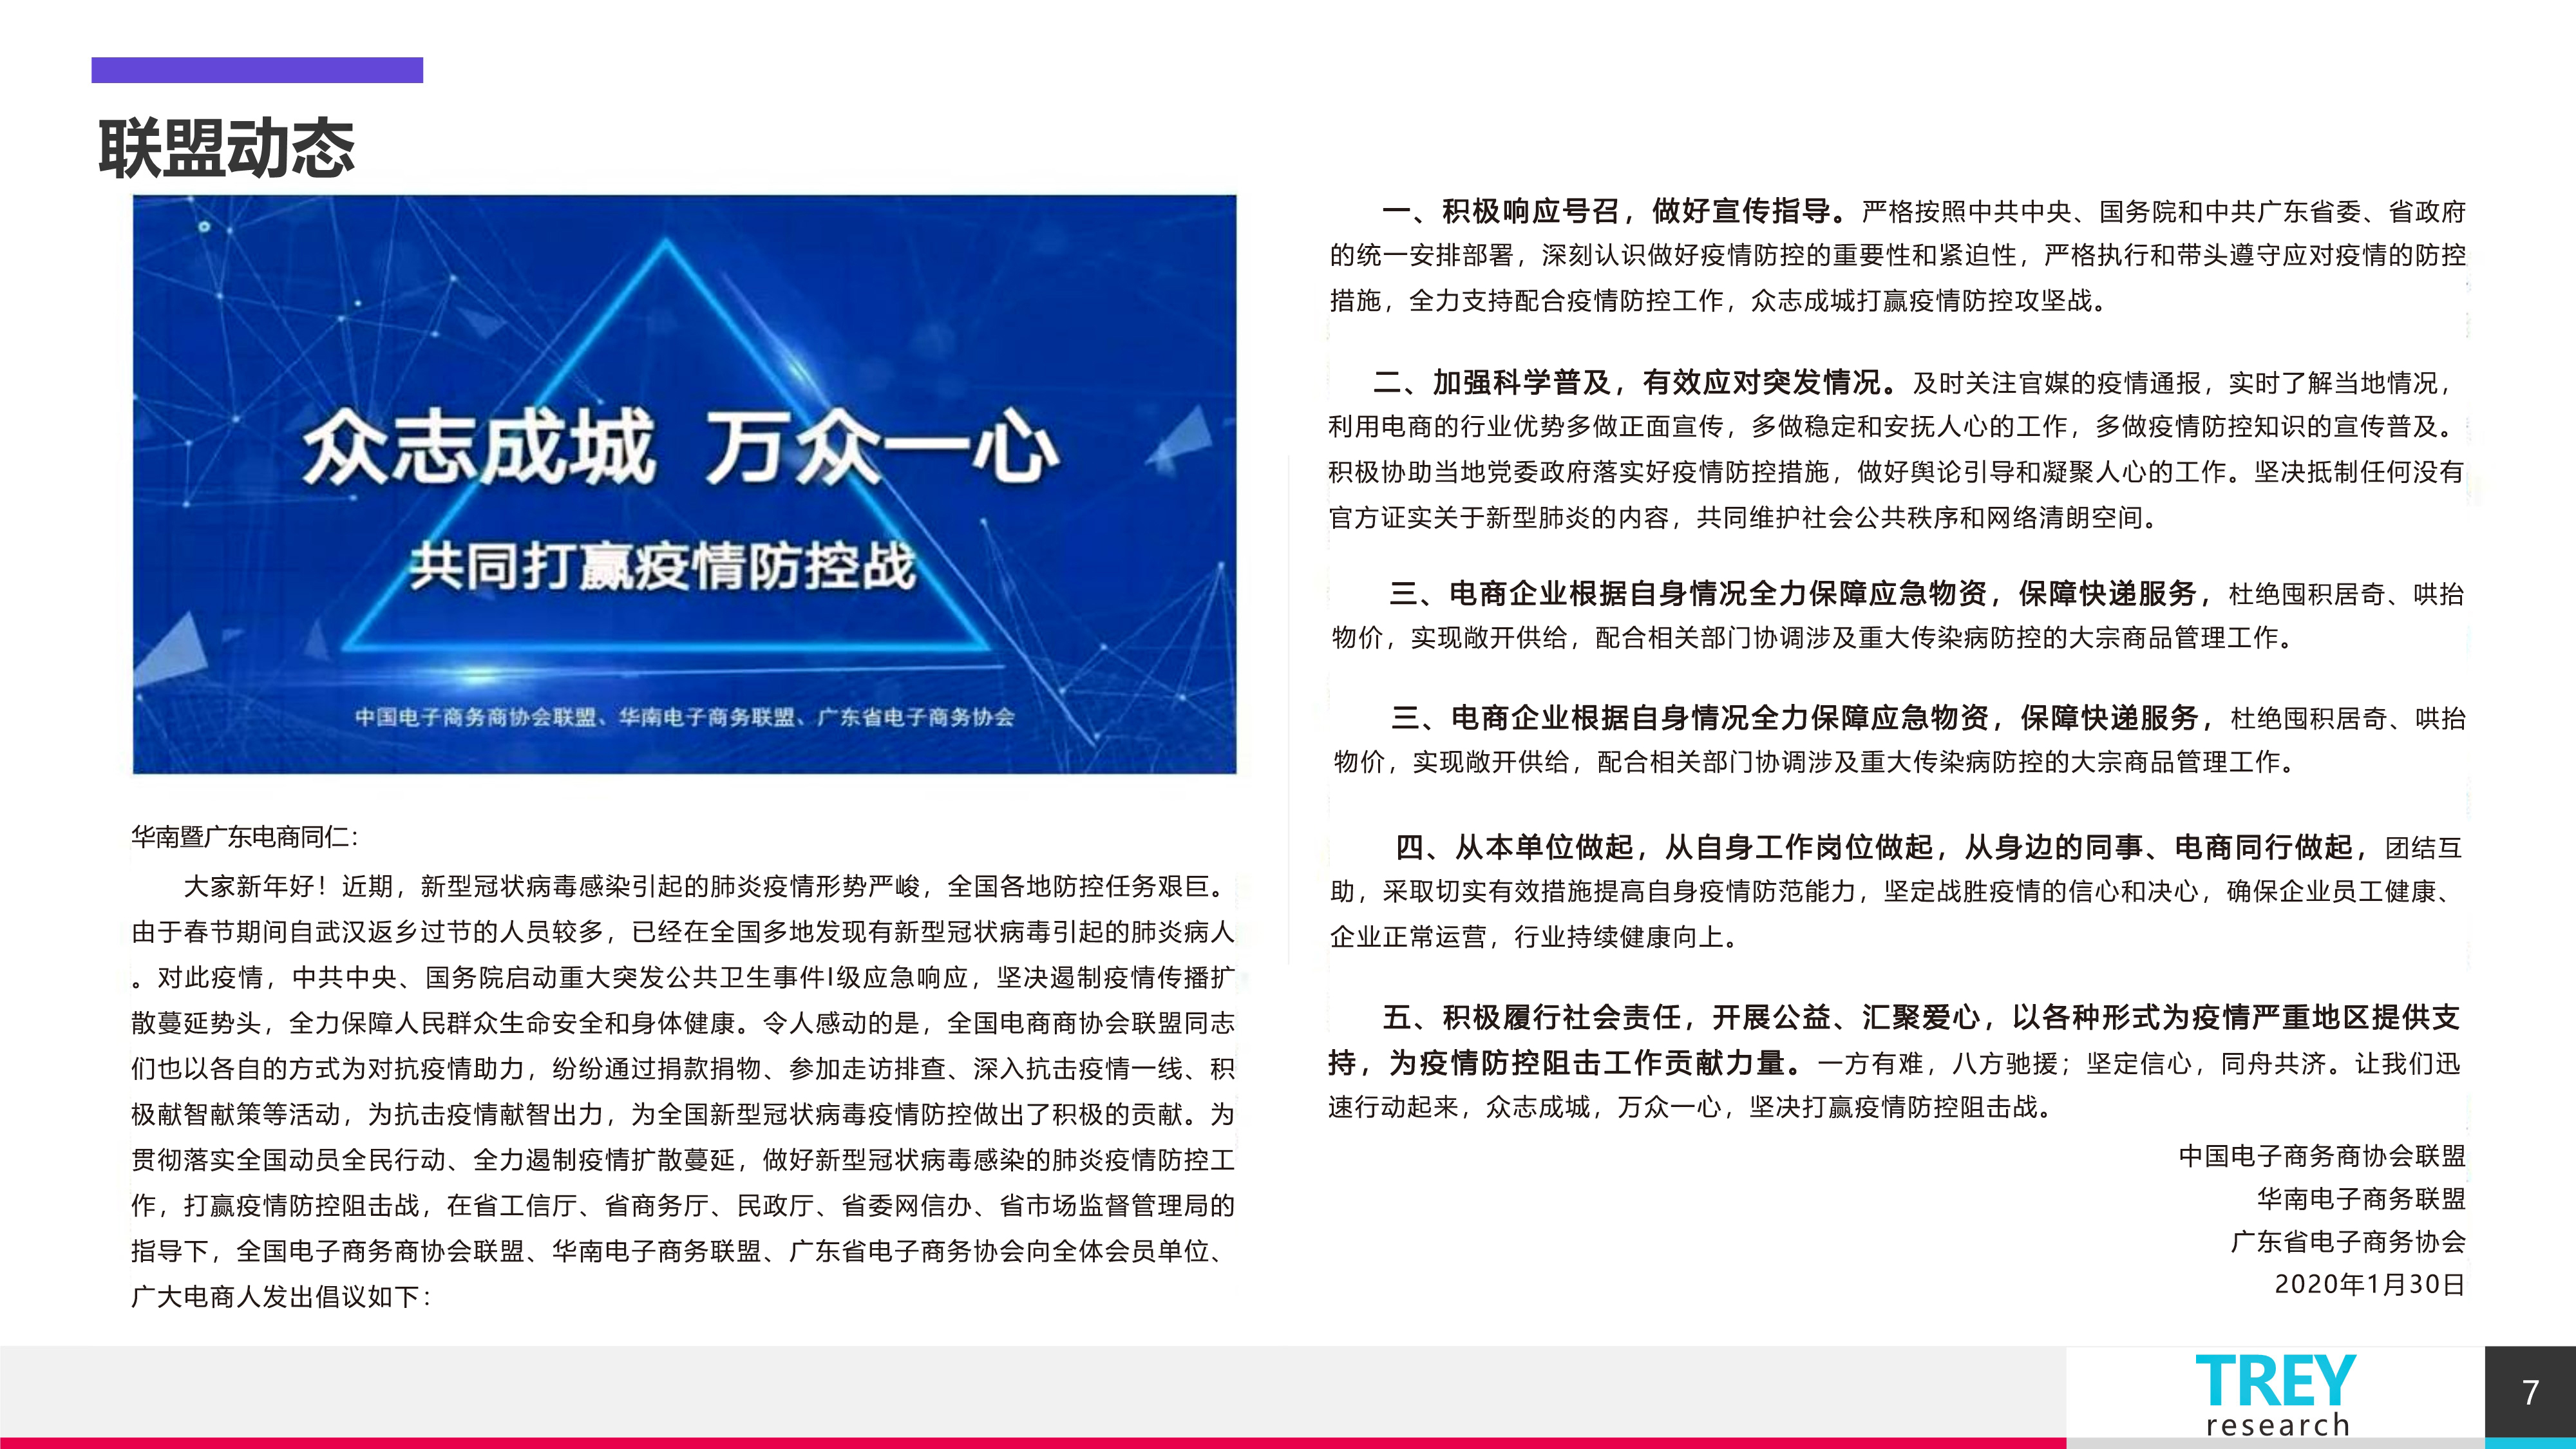 10中国电子商务商协会联盟0220-1_7